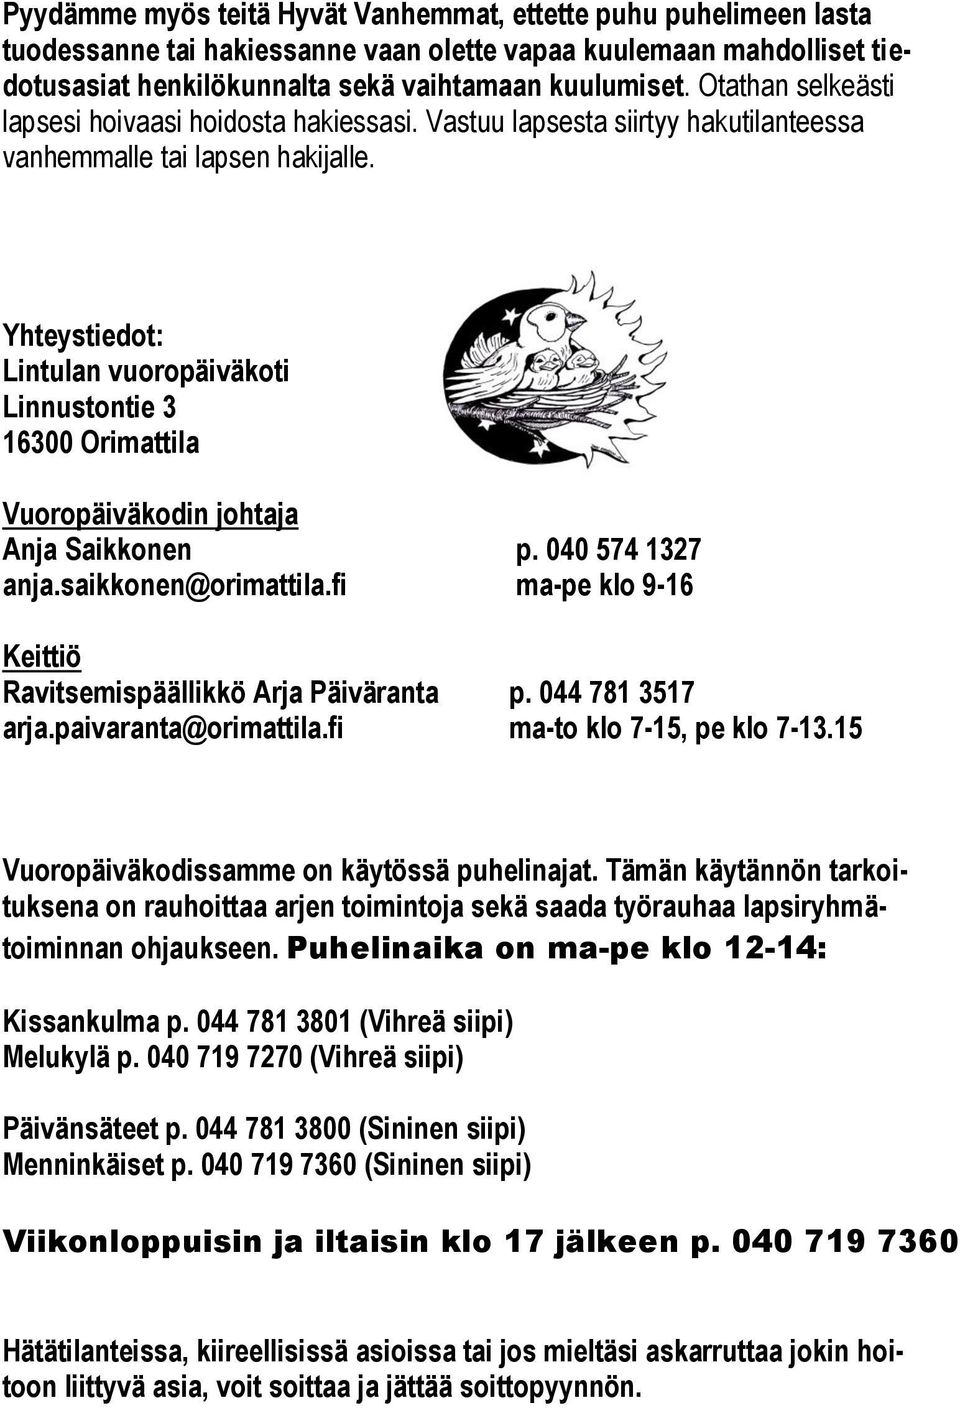 Yhteystiedot: Lintulan vuoropäiväkoti Linnustontie 3 16300 Orimattila Vuoropäiväkodin johtaja Anja Saikkonen p. 040 574 1327 anja.saikkonen@orimattila.